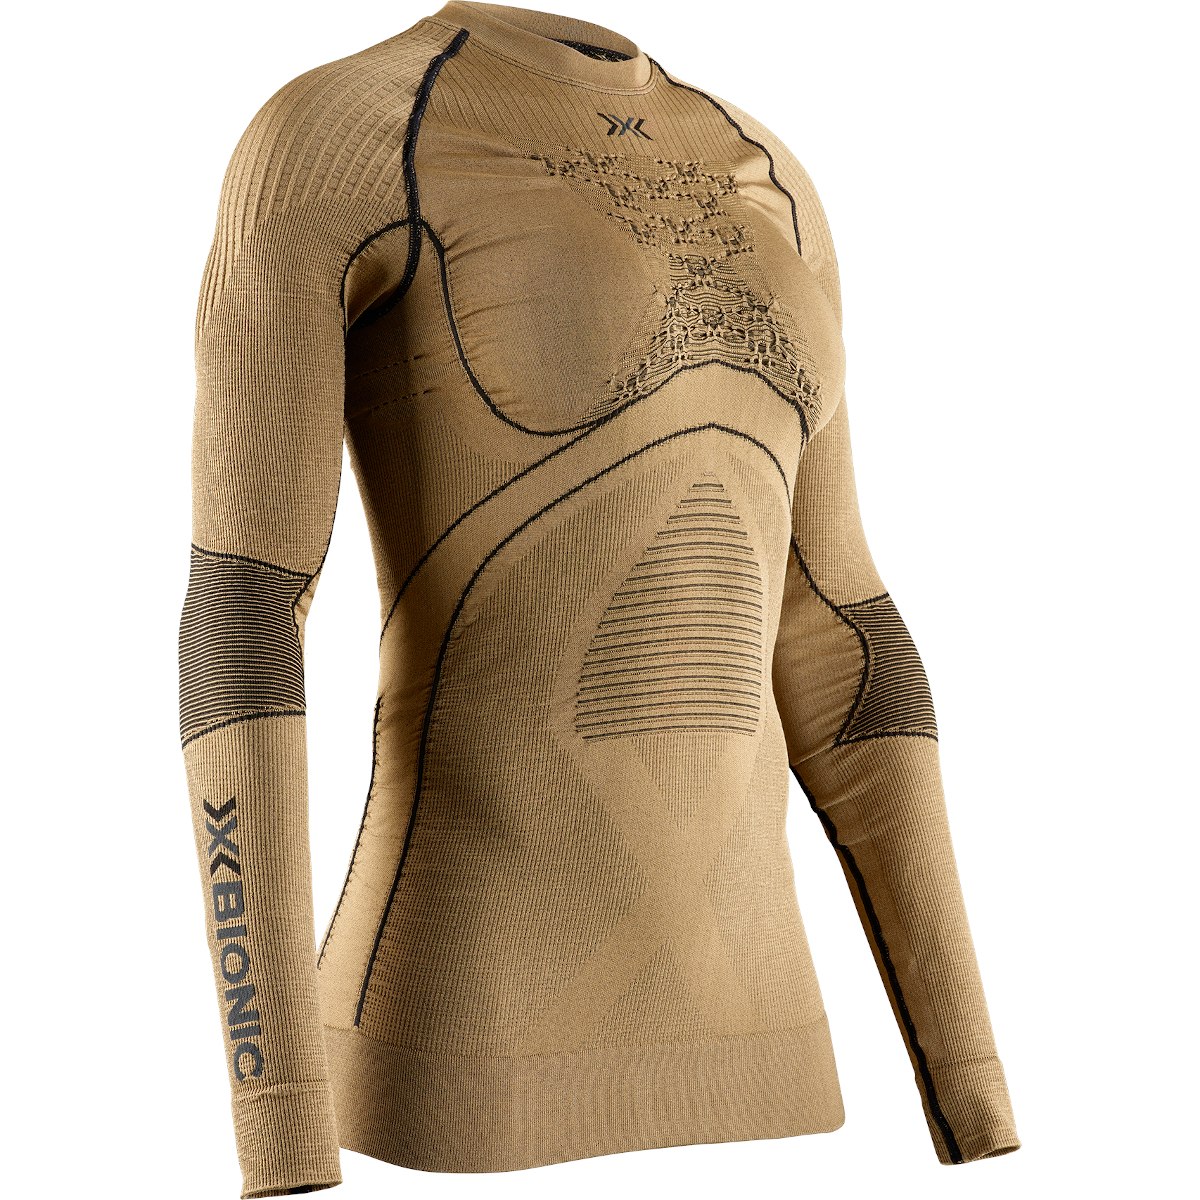 Produktbild von X-Bionic Radiactor 4.0 Rundhals Damen Langarm-Unterhemd - gold/black